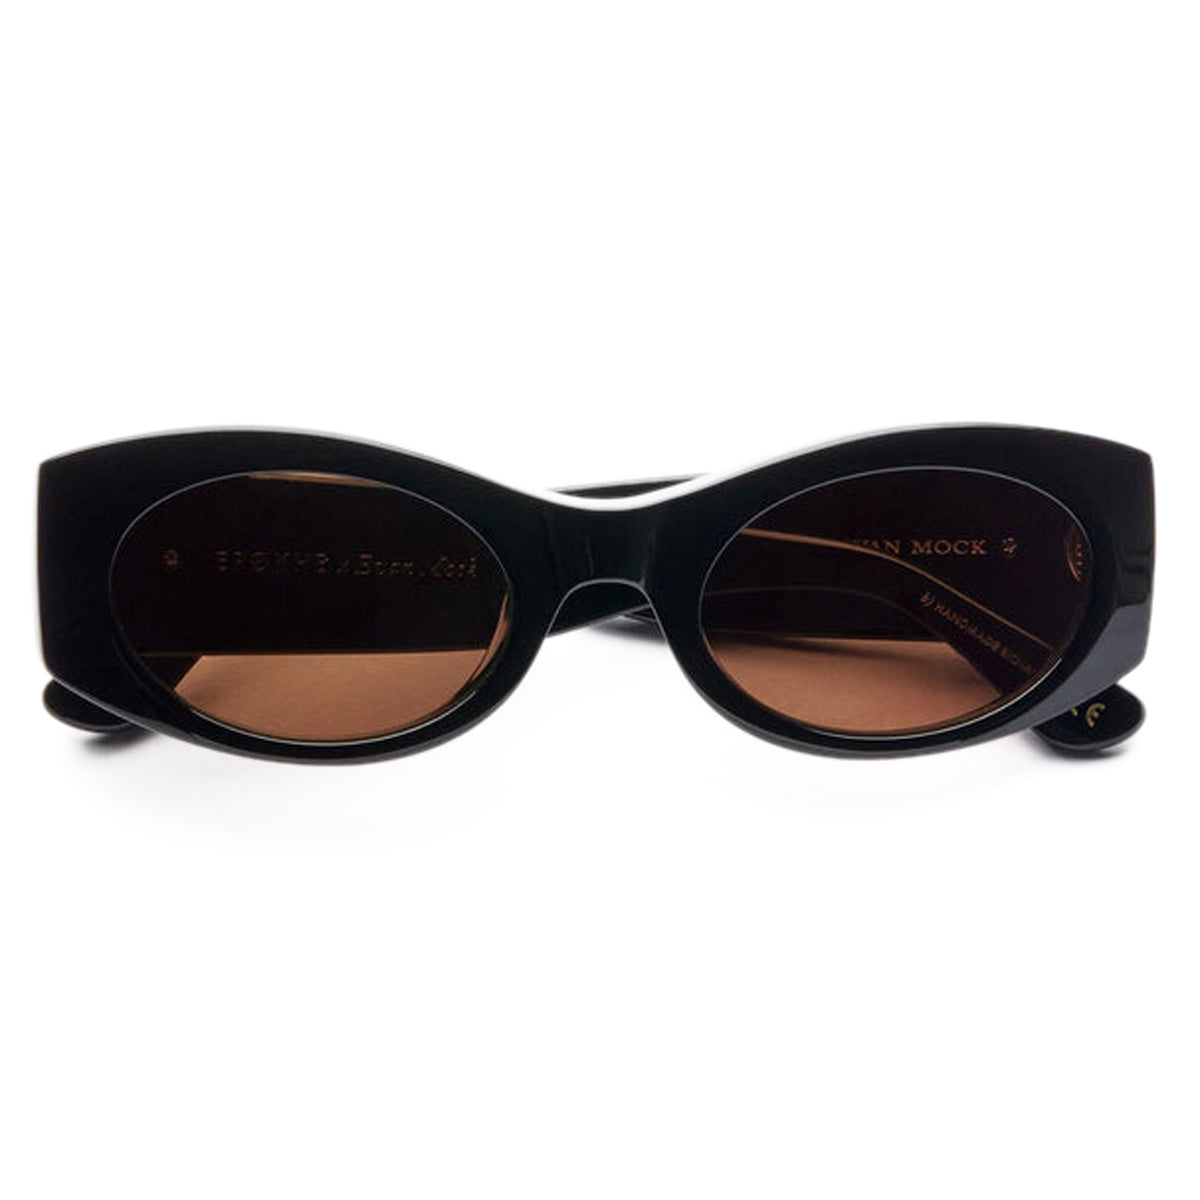 Epokhe Suede Sunglasses - Black Polished/Bronze Amber image 2